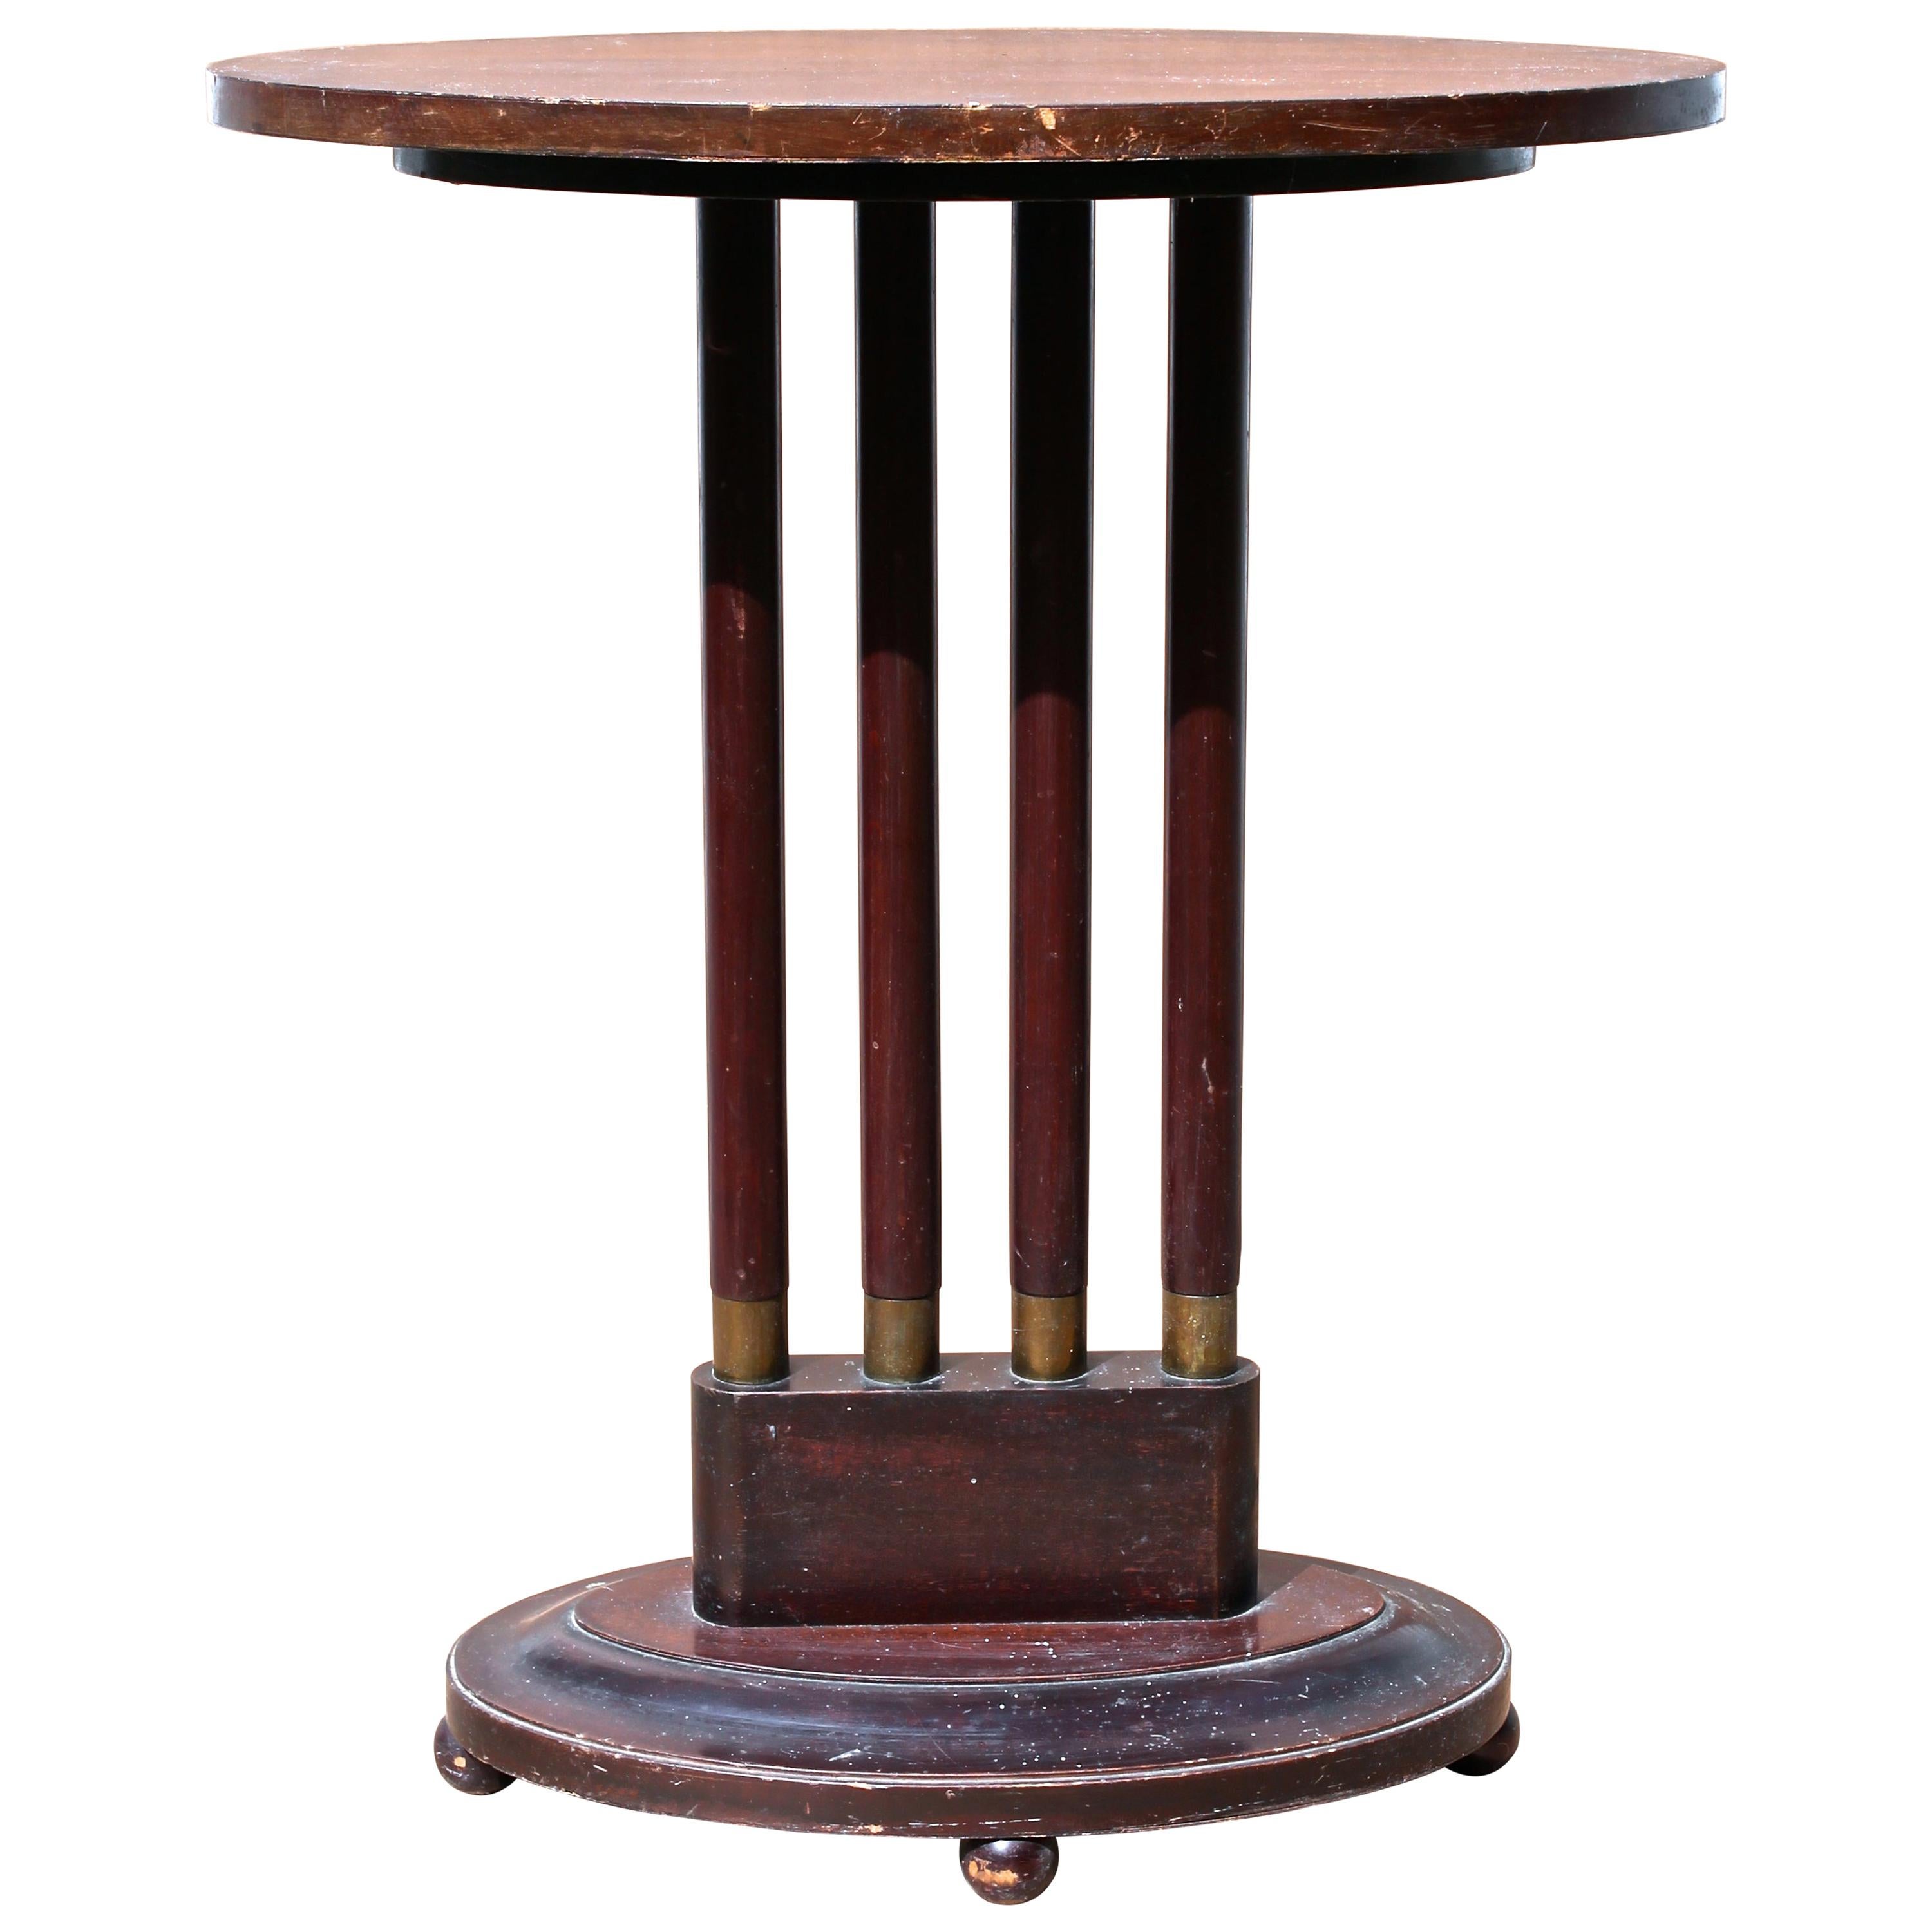 Josef Hoffmann Wiener Werkstatte Style Console Table